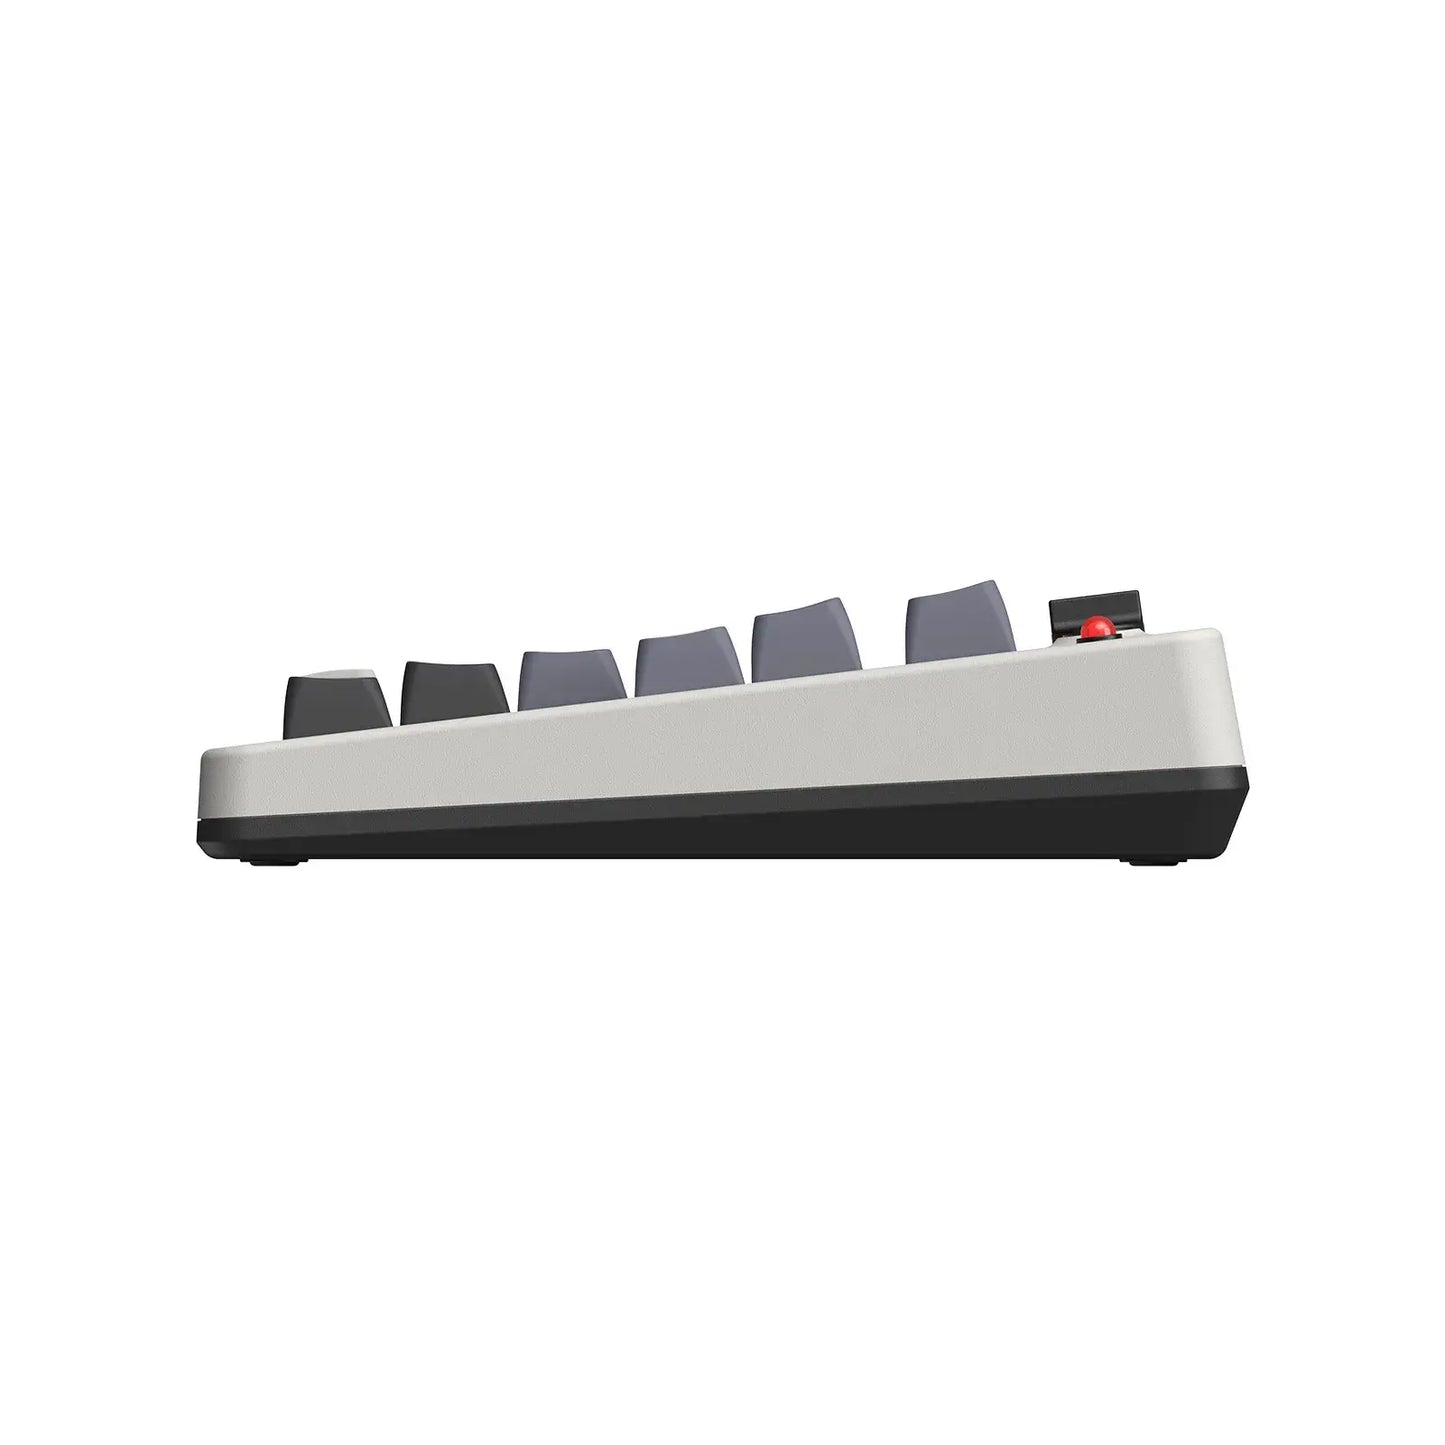 8BitDo tiene nuevos teclados mecánicos retro que nos recuerdan a la NES. Y  llegan con botonacos como extra